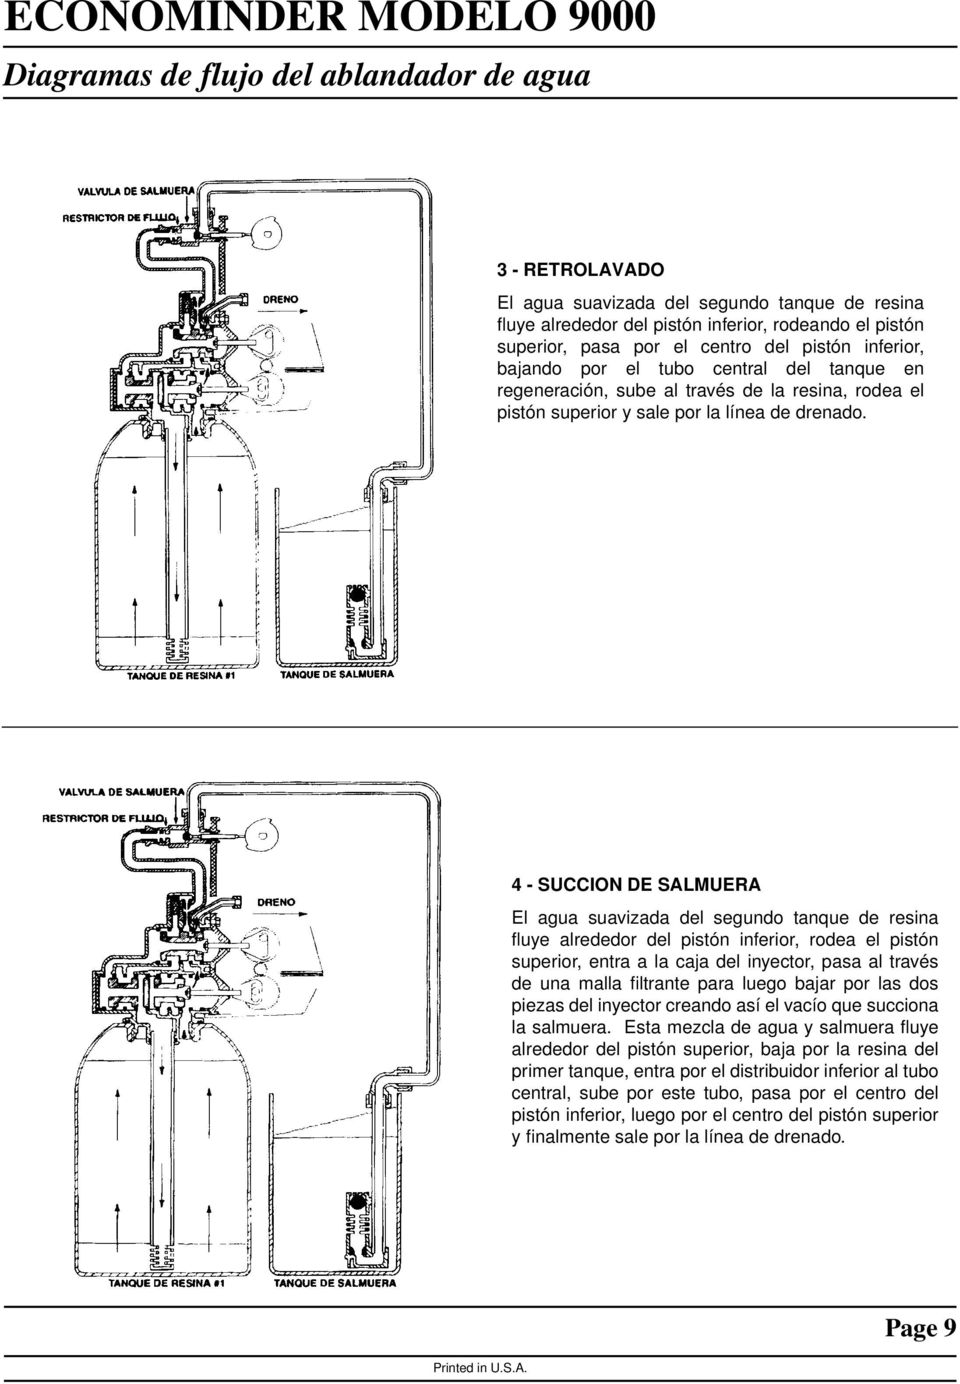 4 - SUCCION DE SALMUERA El agua suavizada del segundo tanque de resina fluye alrededor del pistón inferior, rodea el pistón superior, entra a la caja del inyector, pasa al través de una malla